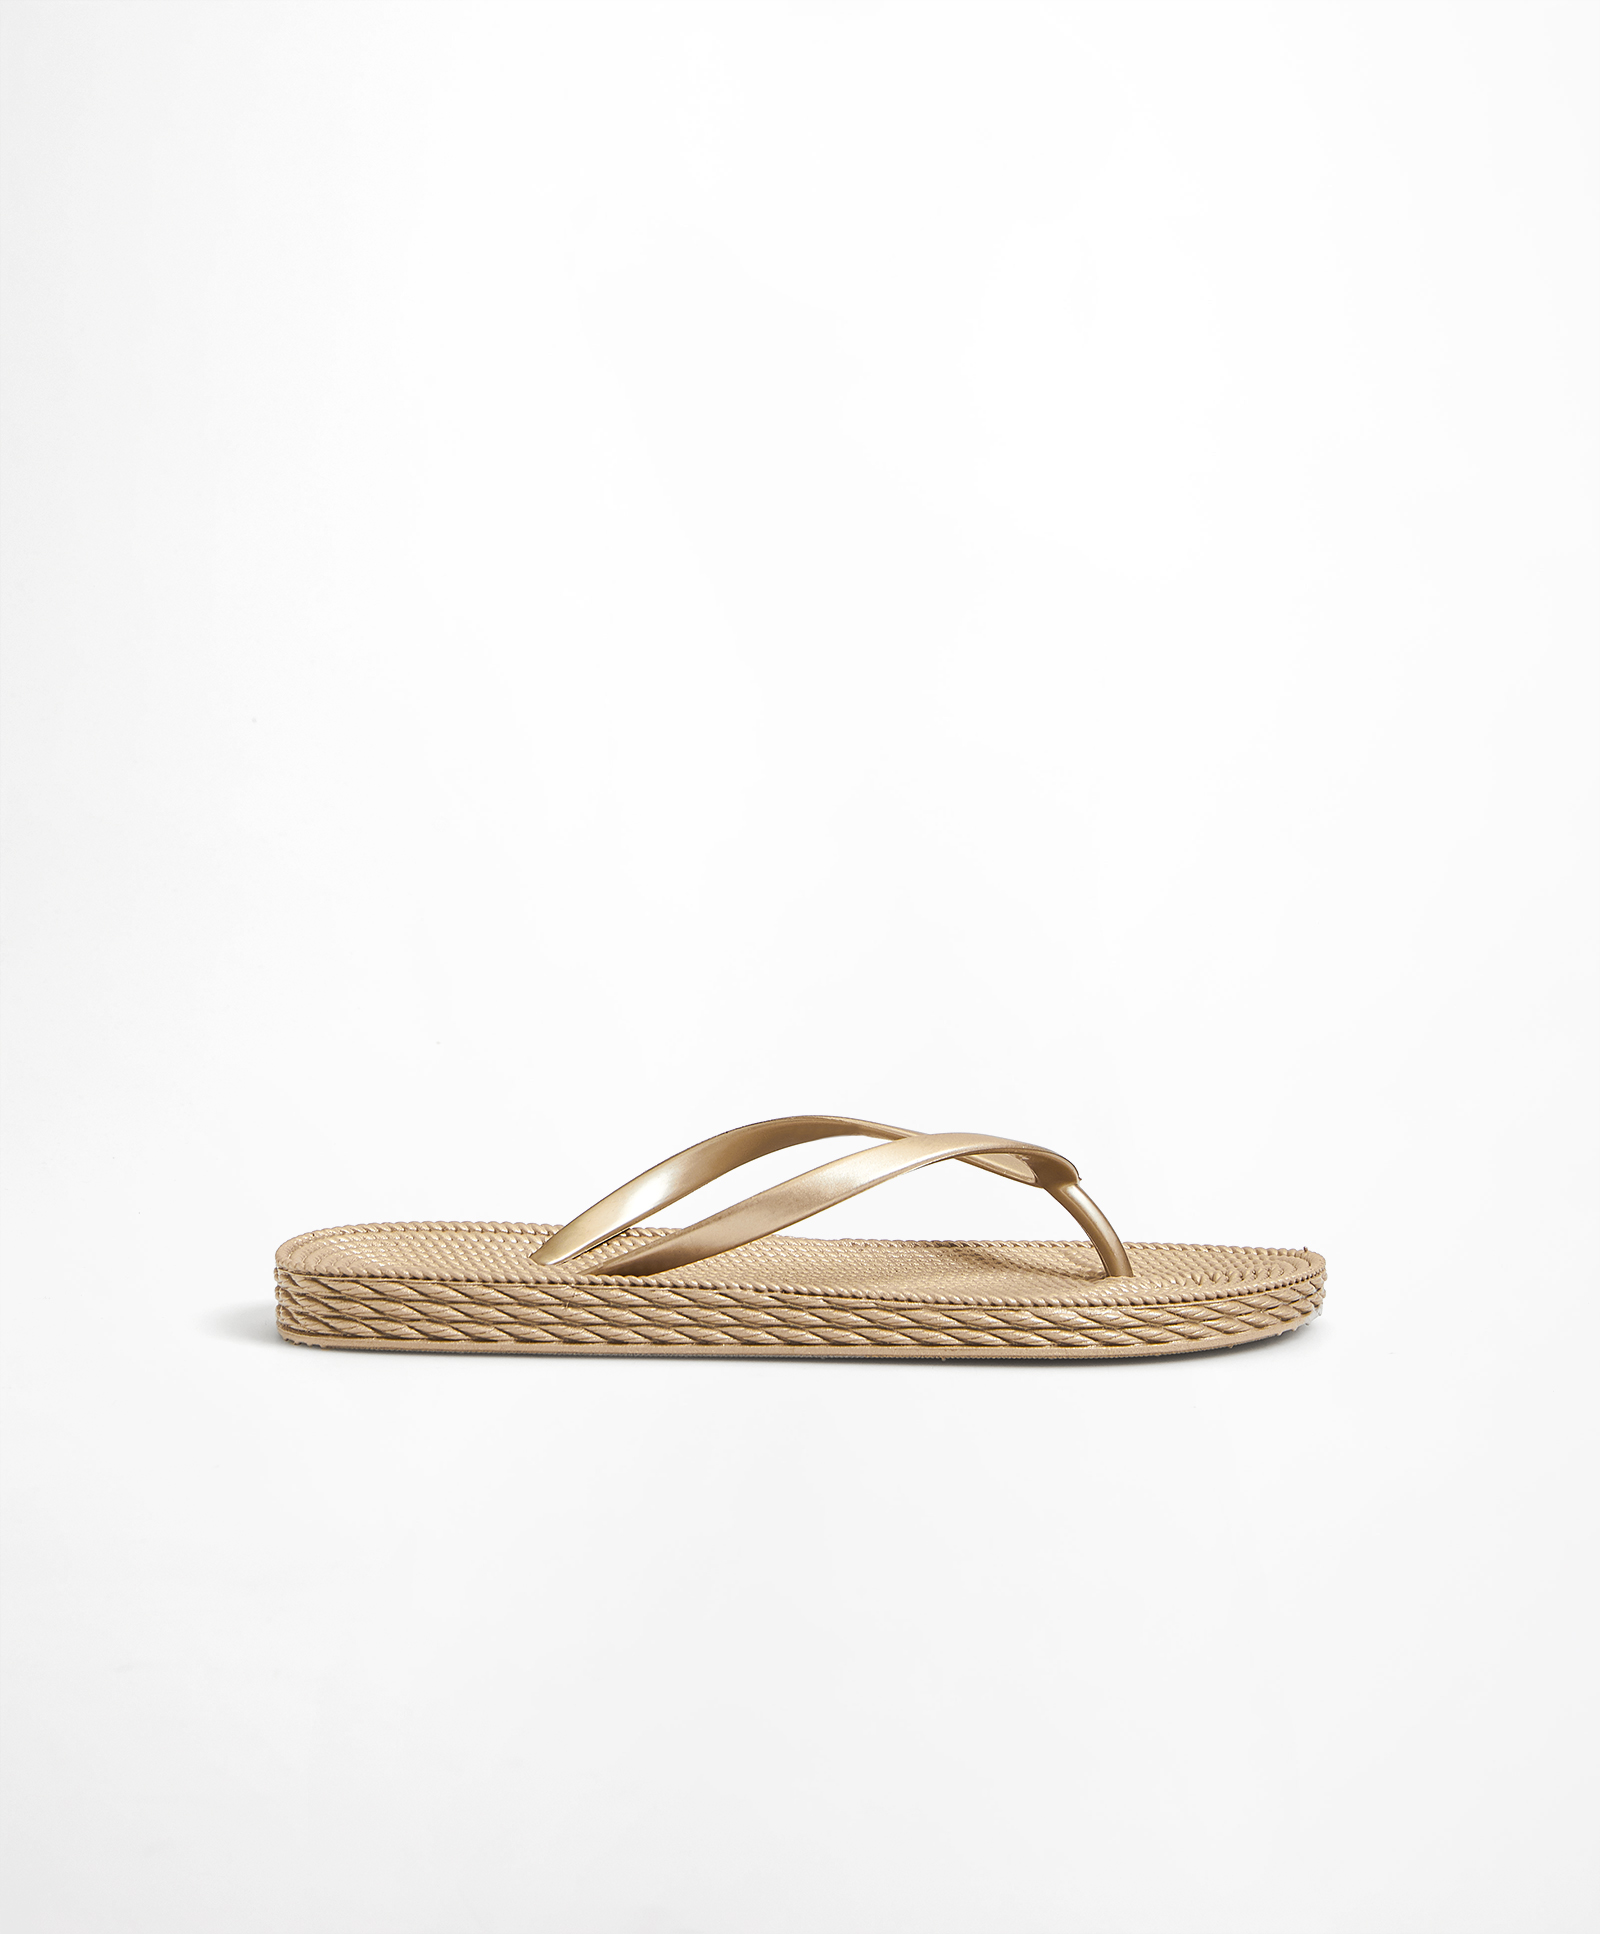 Gold textured beach sandals